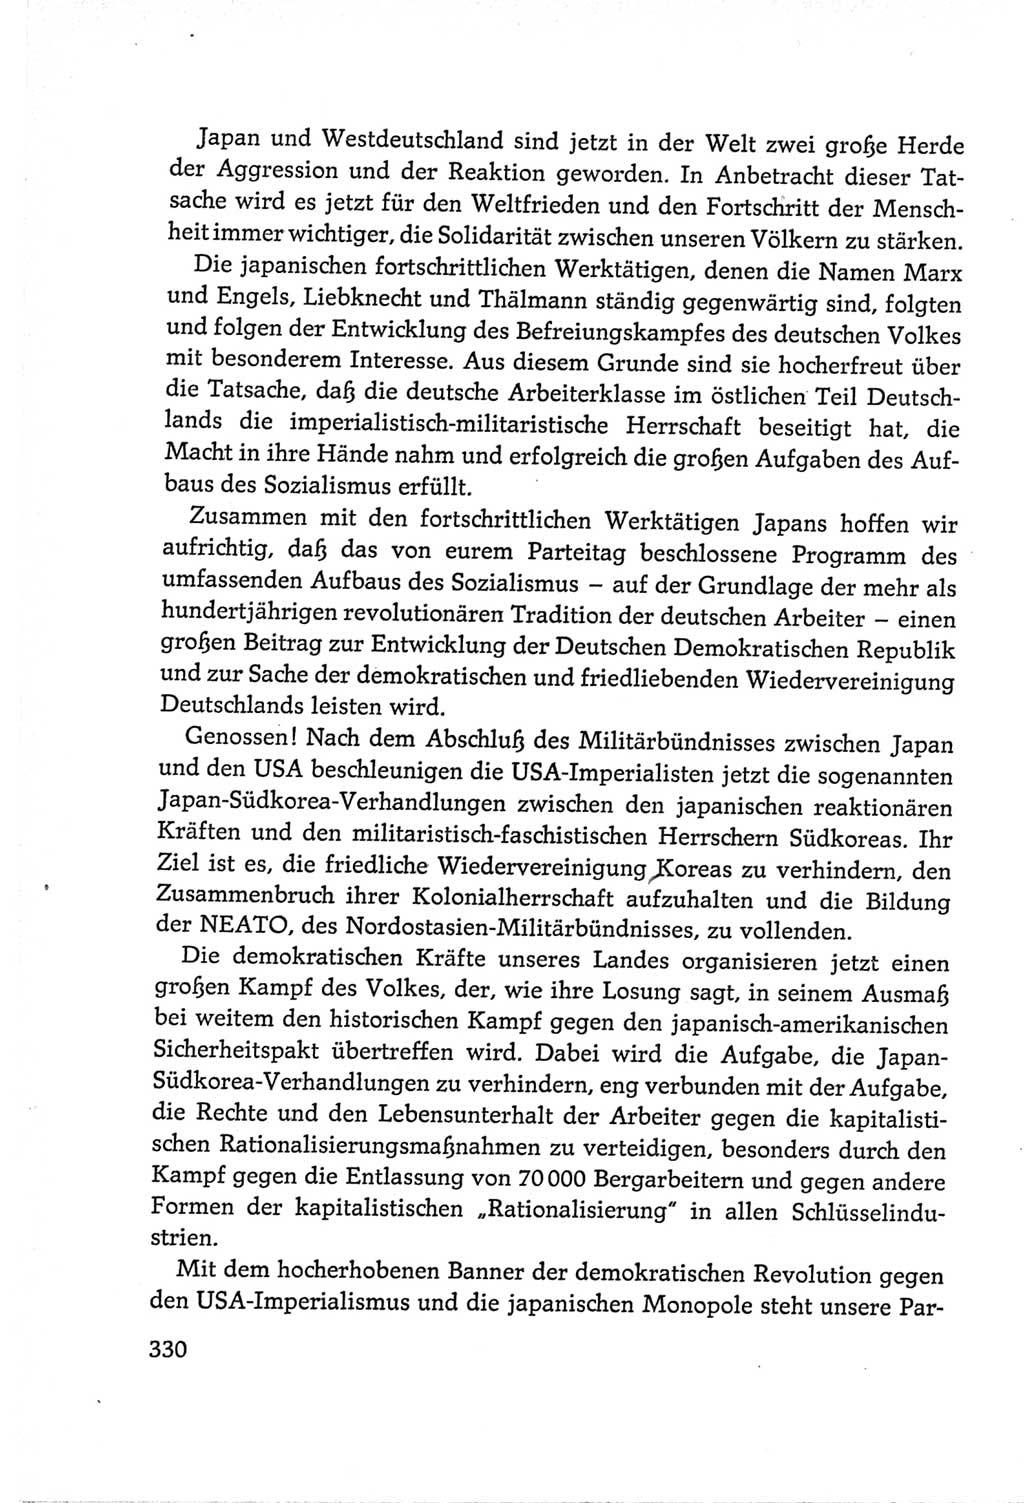 Protokoll der Verhandlungen des Ⅵ. Parteitages der Sozialistischen Einheitspartei Deutschlands (SED) [Deutsche Demokratische Republik (DDR)] 1963, Band Ⅱ, Seite 330 (Prot. Verh. Ⅵ. PT SED DDR 1963, Bd. Ⅱ, S. 330)